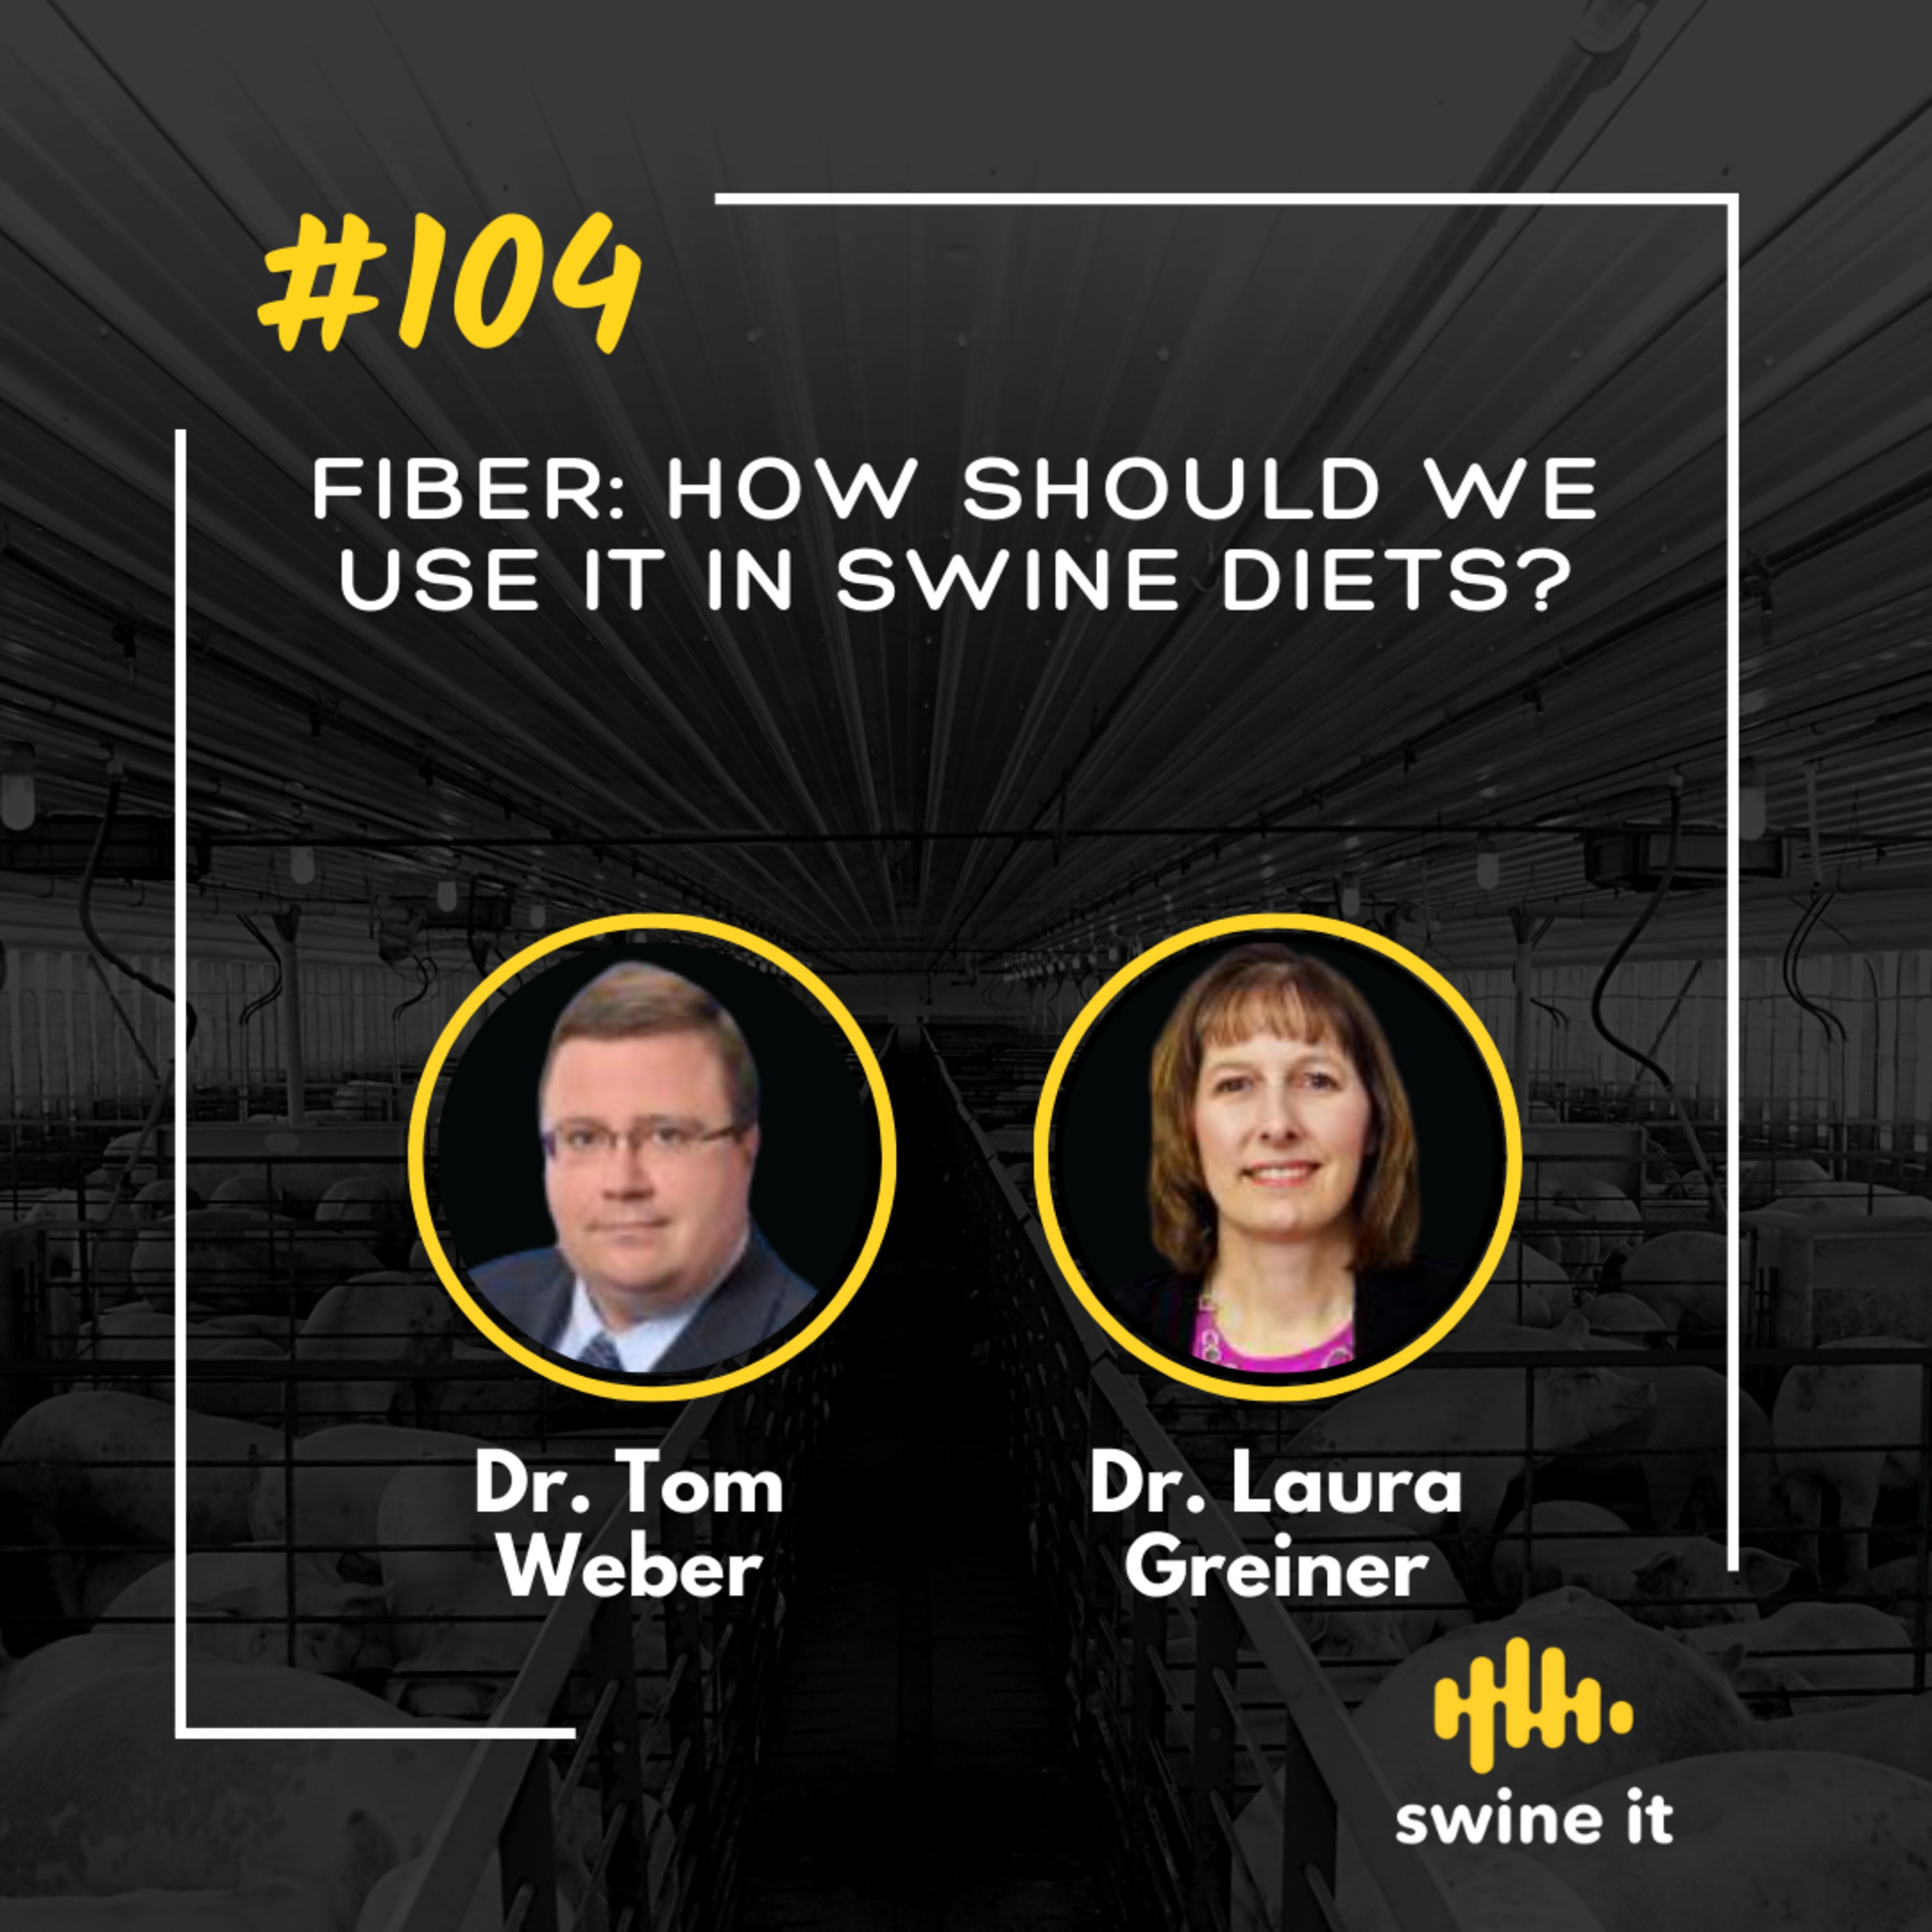 Dr. Tom Weber: Fiber in Swine Diets | Ep. 104